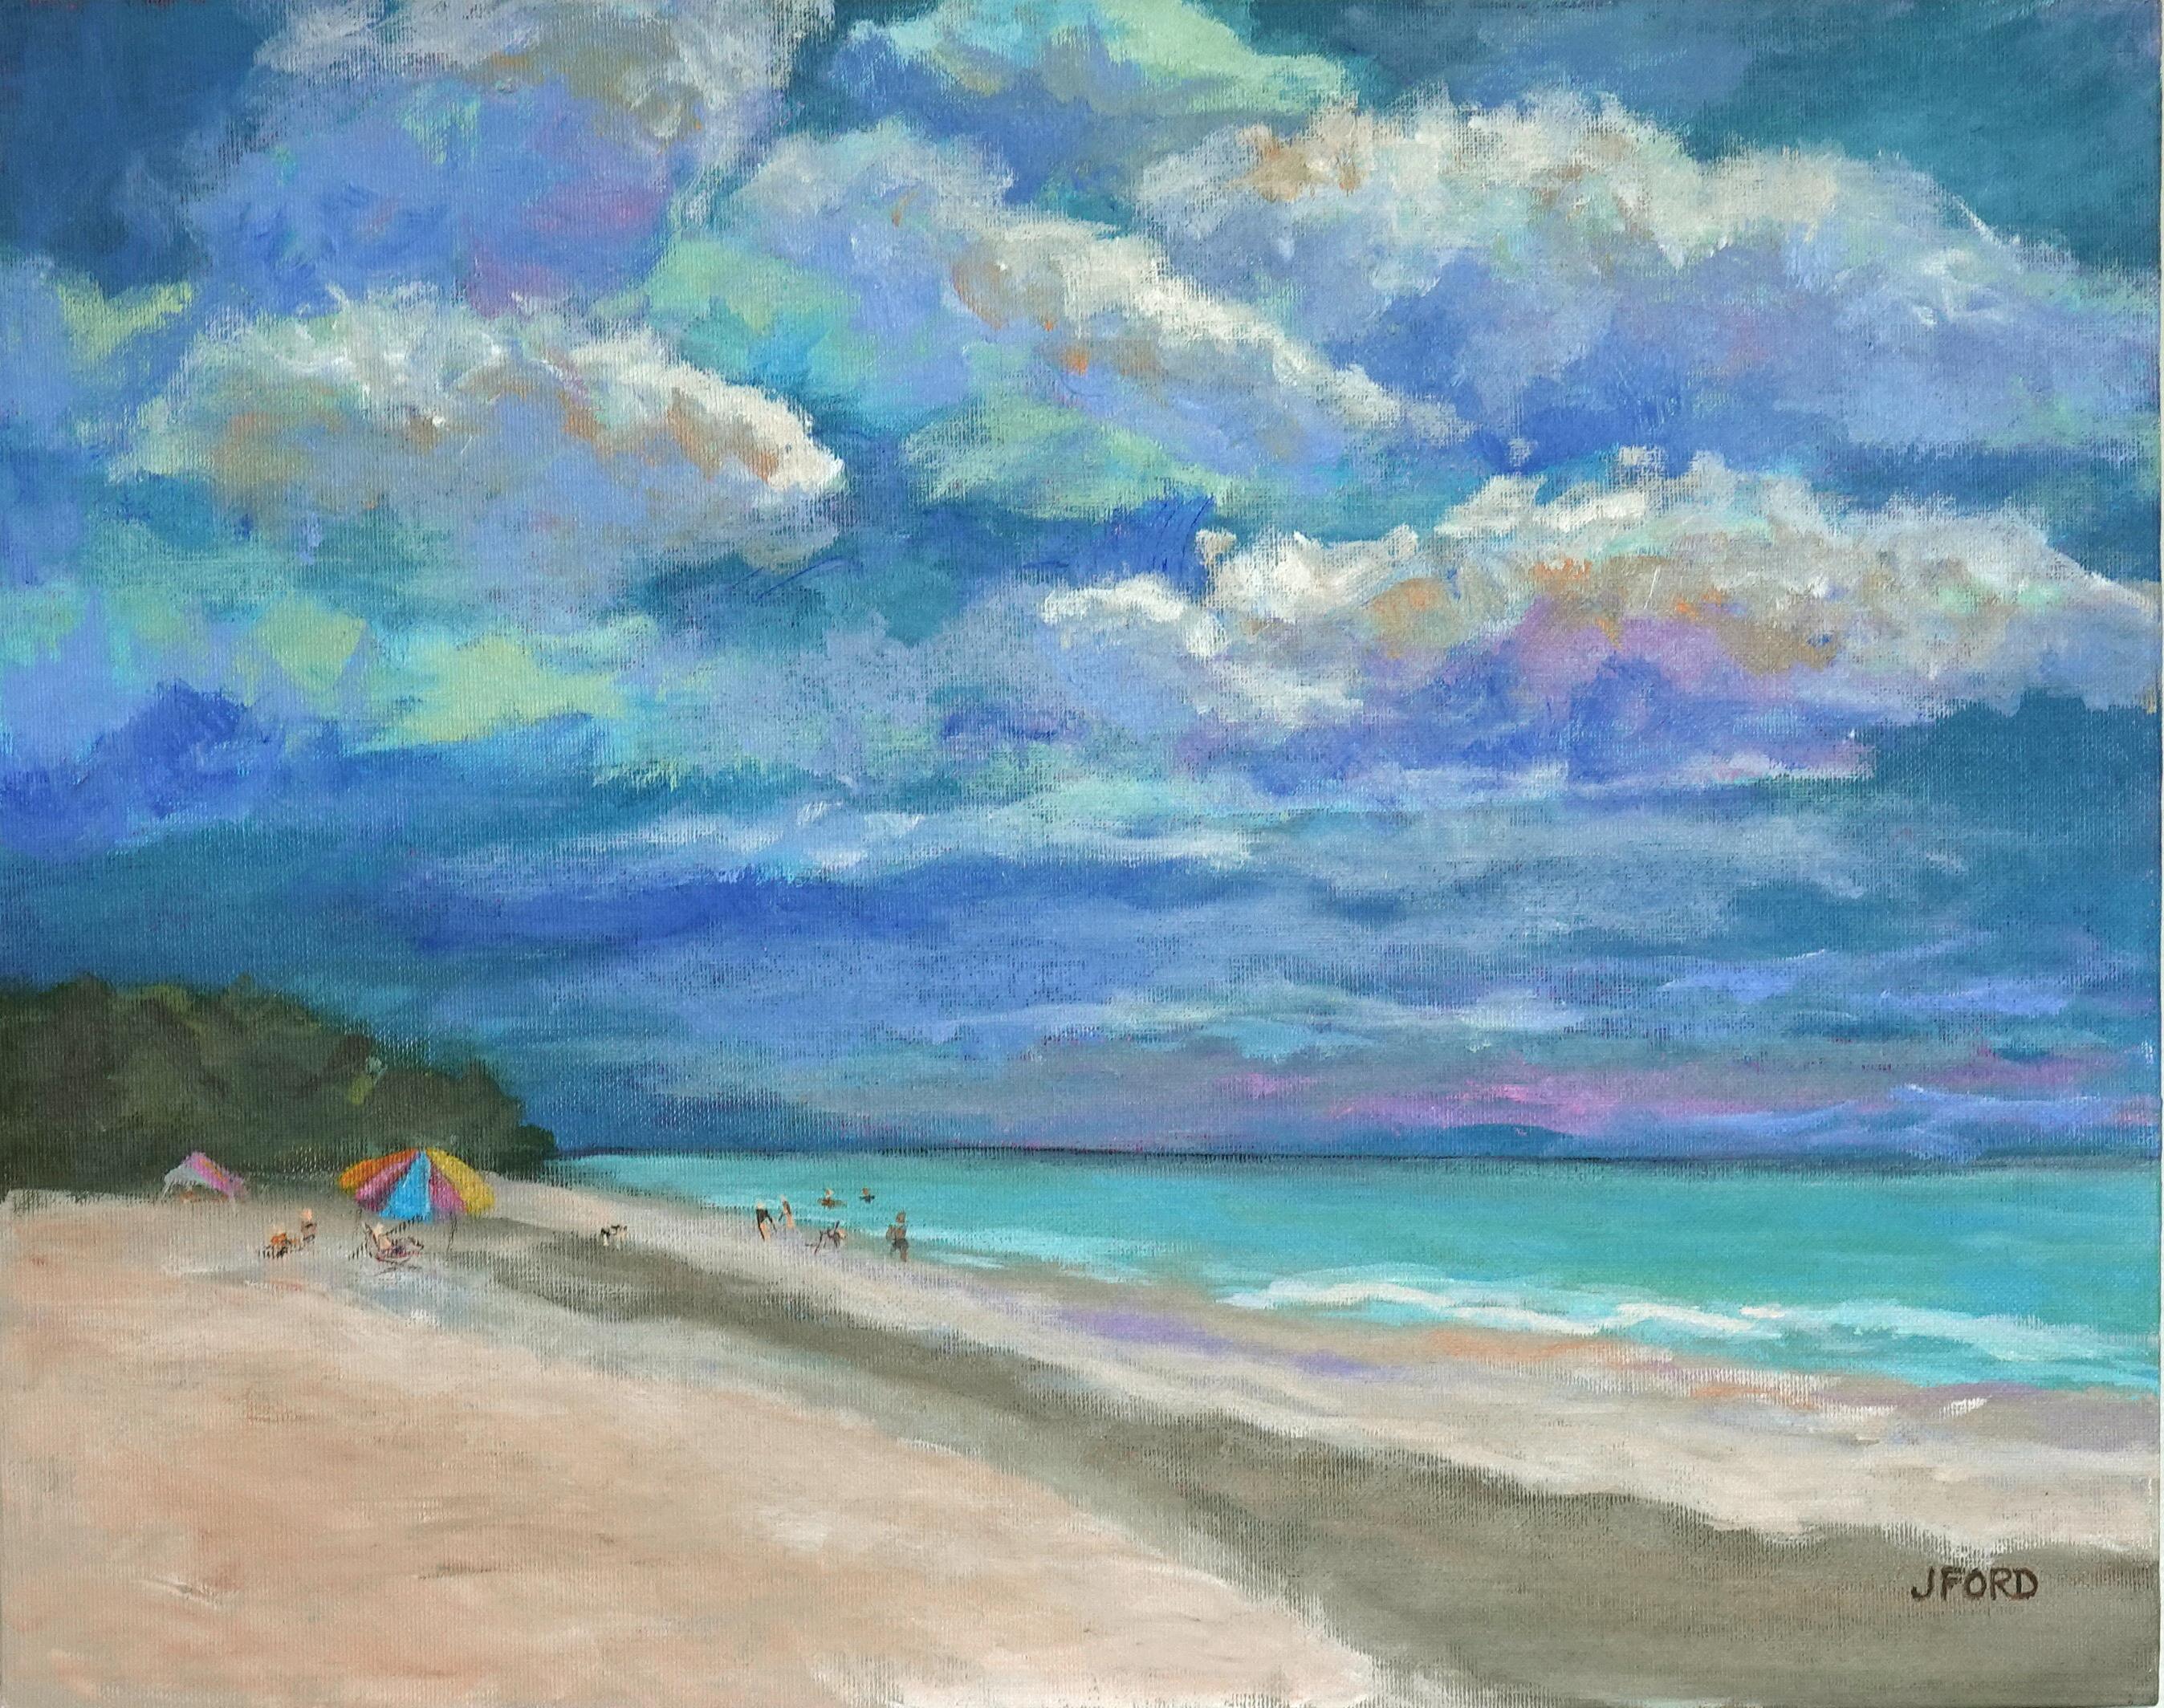 Landscape Painting Joanie Ford - Sand chaud et beaux nuages, peinture d'origine